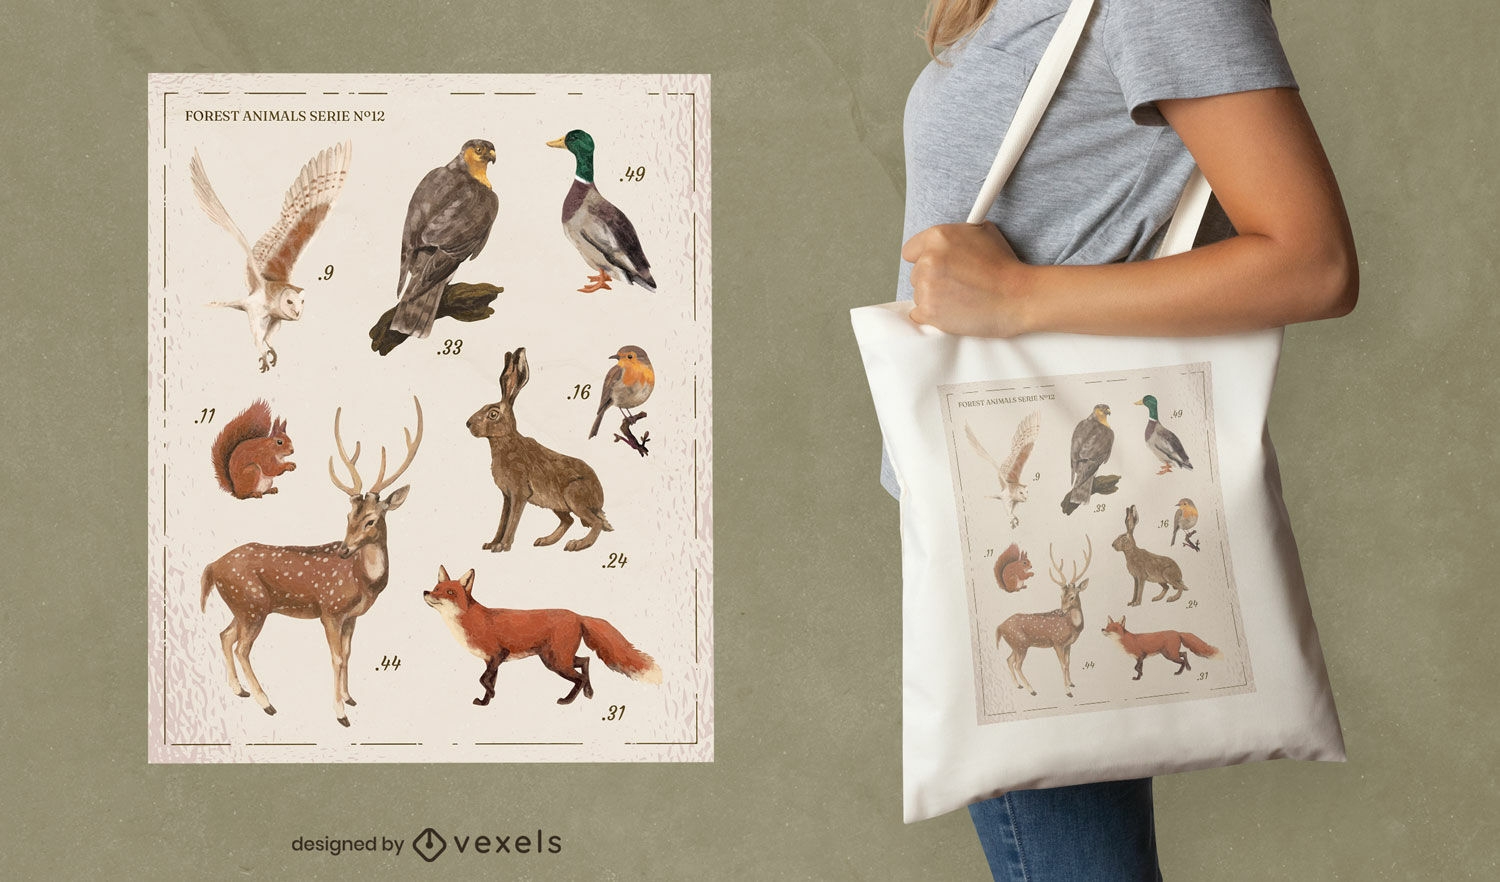 Diseño de bolsa de asas del catálogo de animales del bosque.